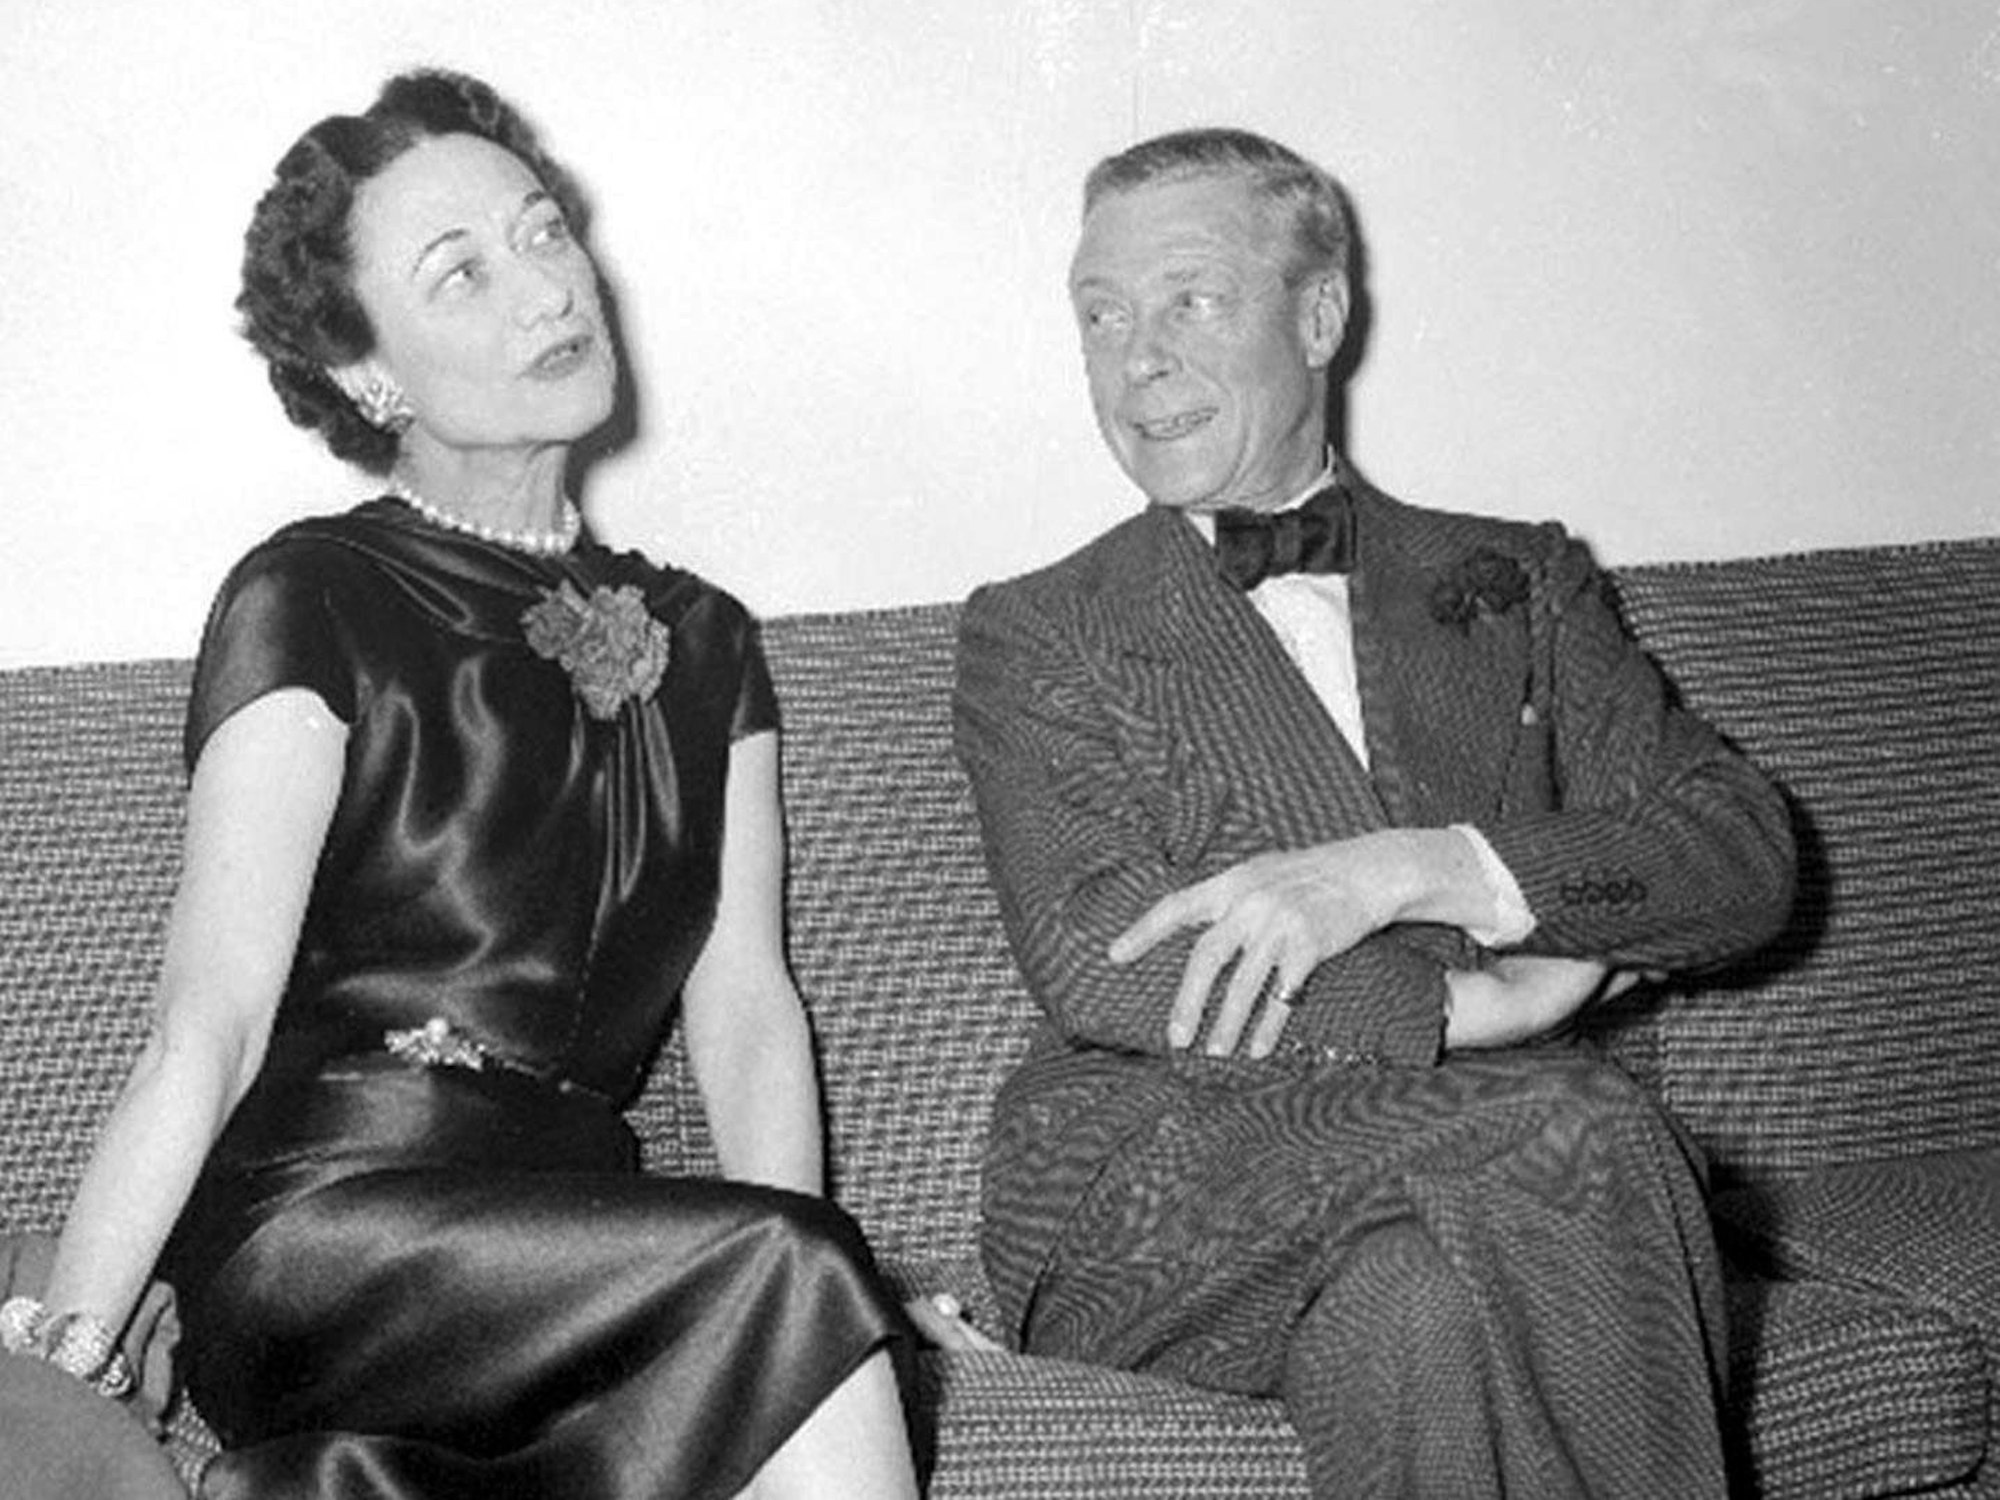 Der Herzog von Windsor und seine Gattin, die Herzogin von Windsor, aufgenommen am 11. Dezember 1954.